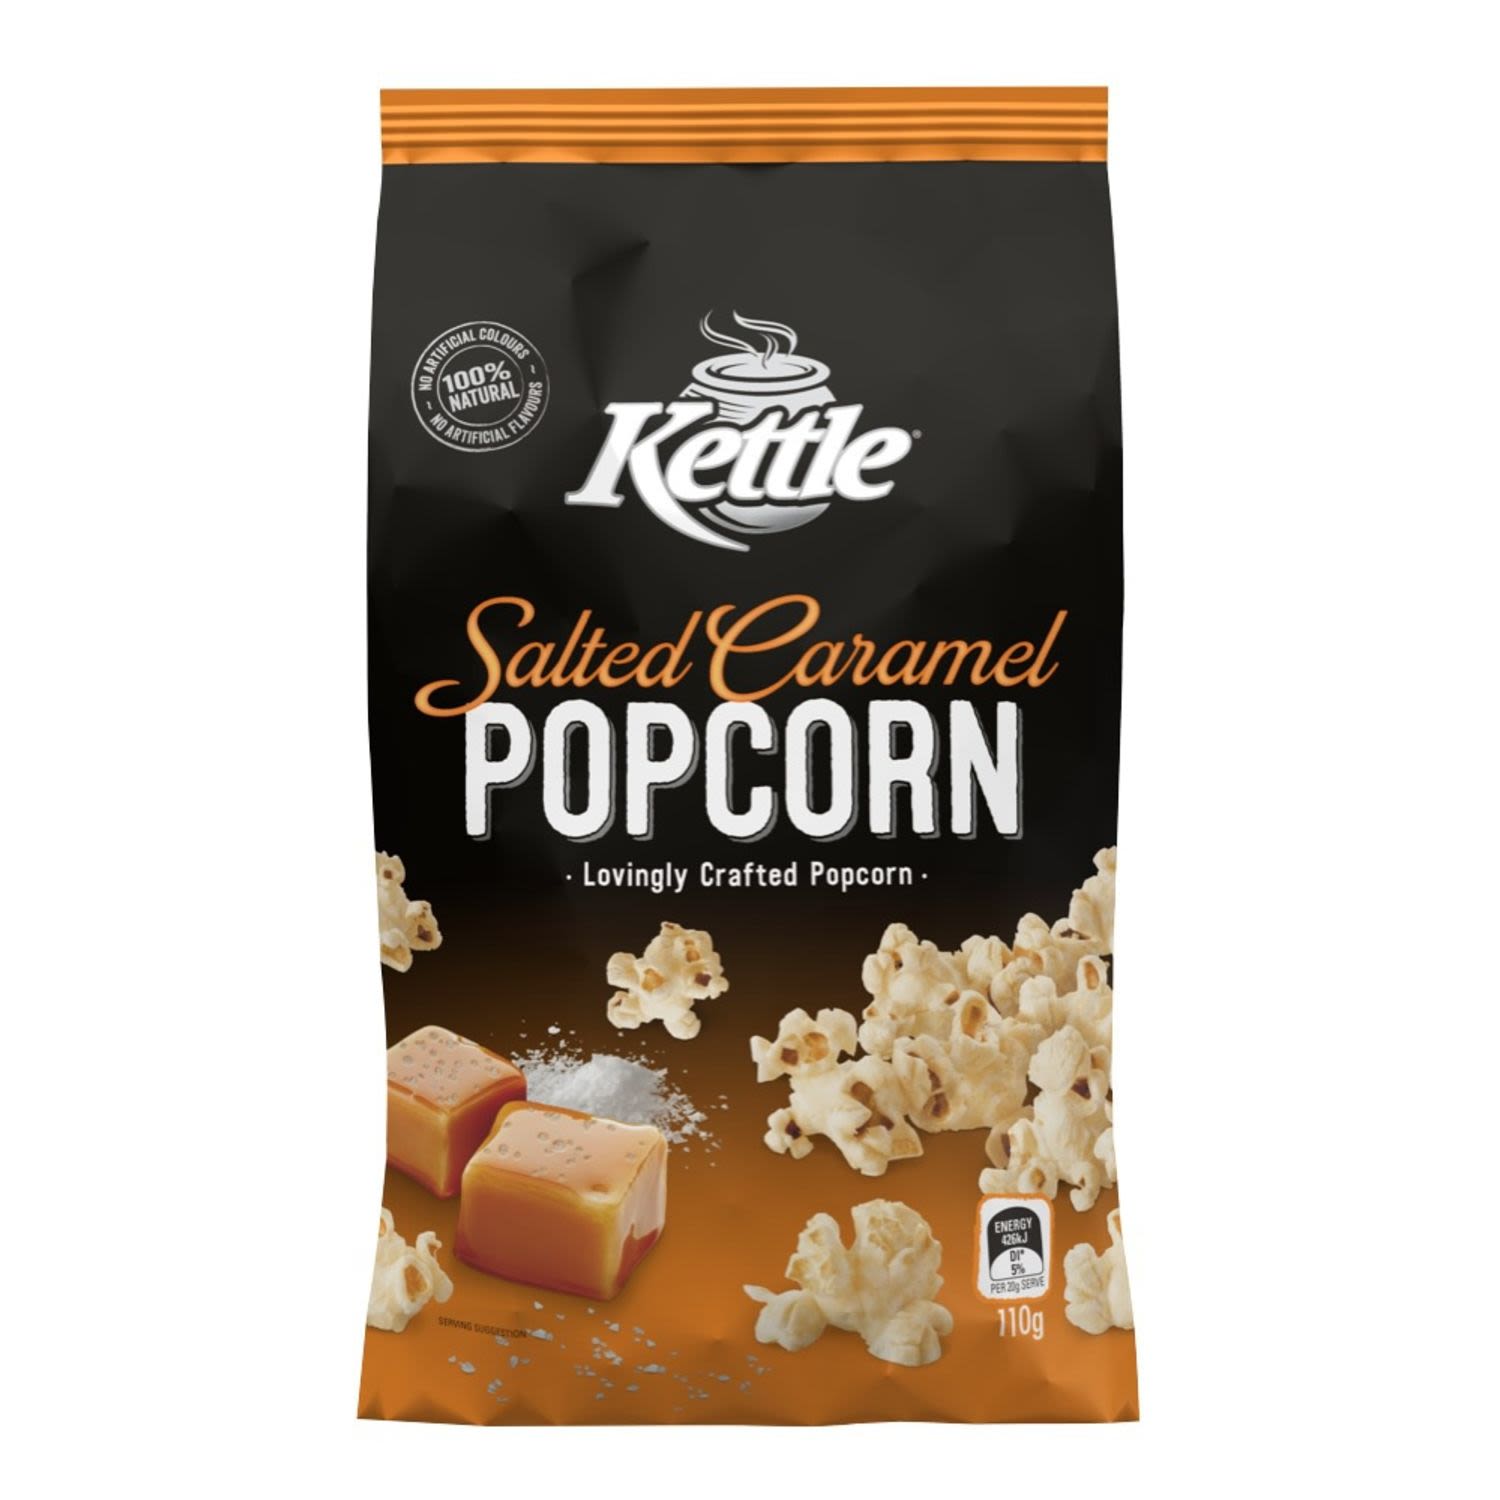 Kettle Peppercorn Salted Caramel, 110 Gram